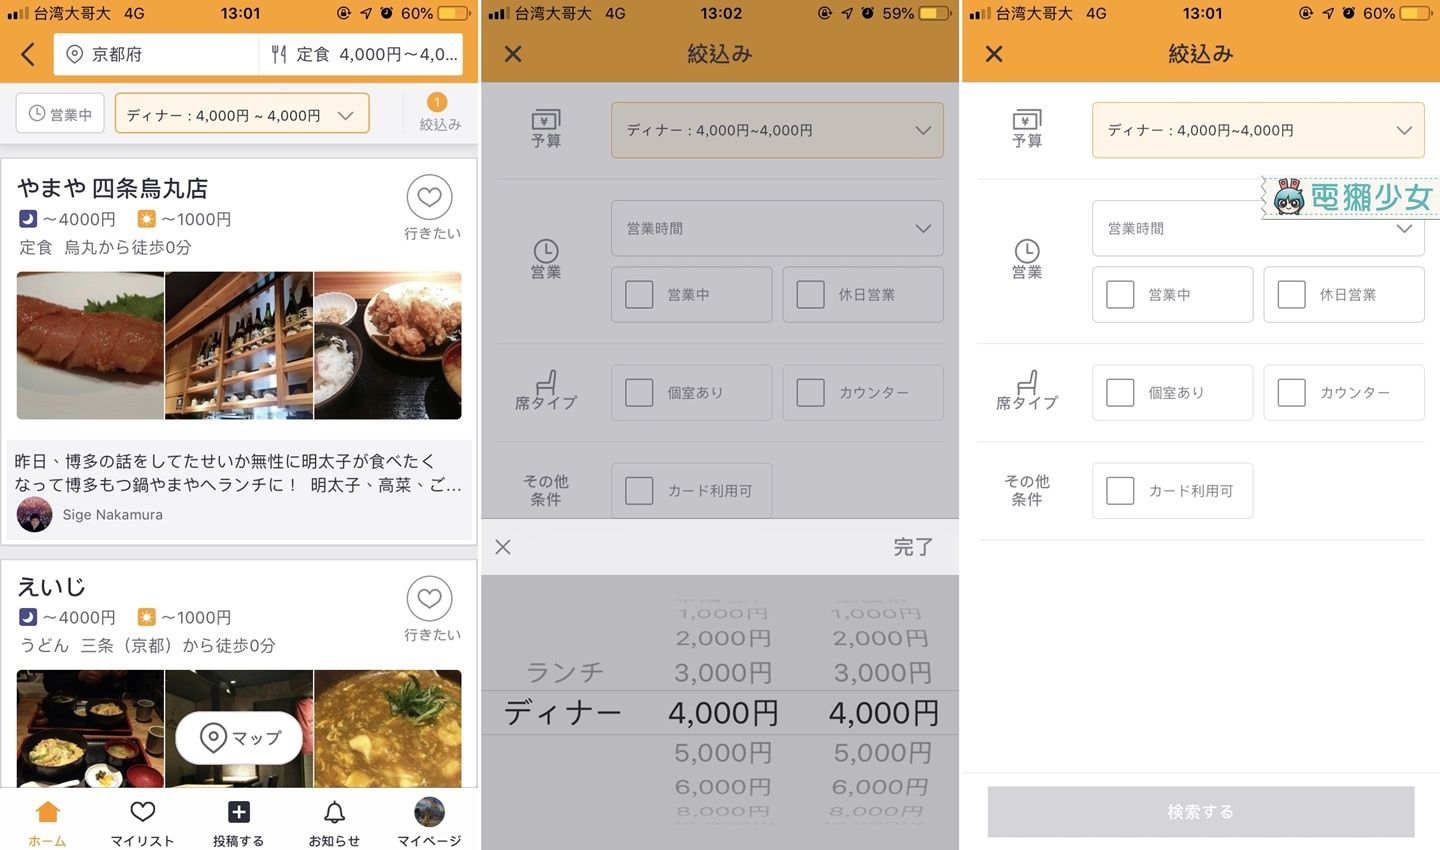 去日本玩吃什麼？『 Retty 』關鍵字一下 餐廳美食通通跑出來！Android / iOS